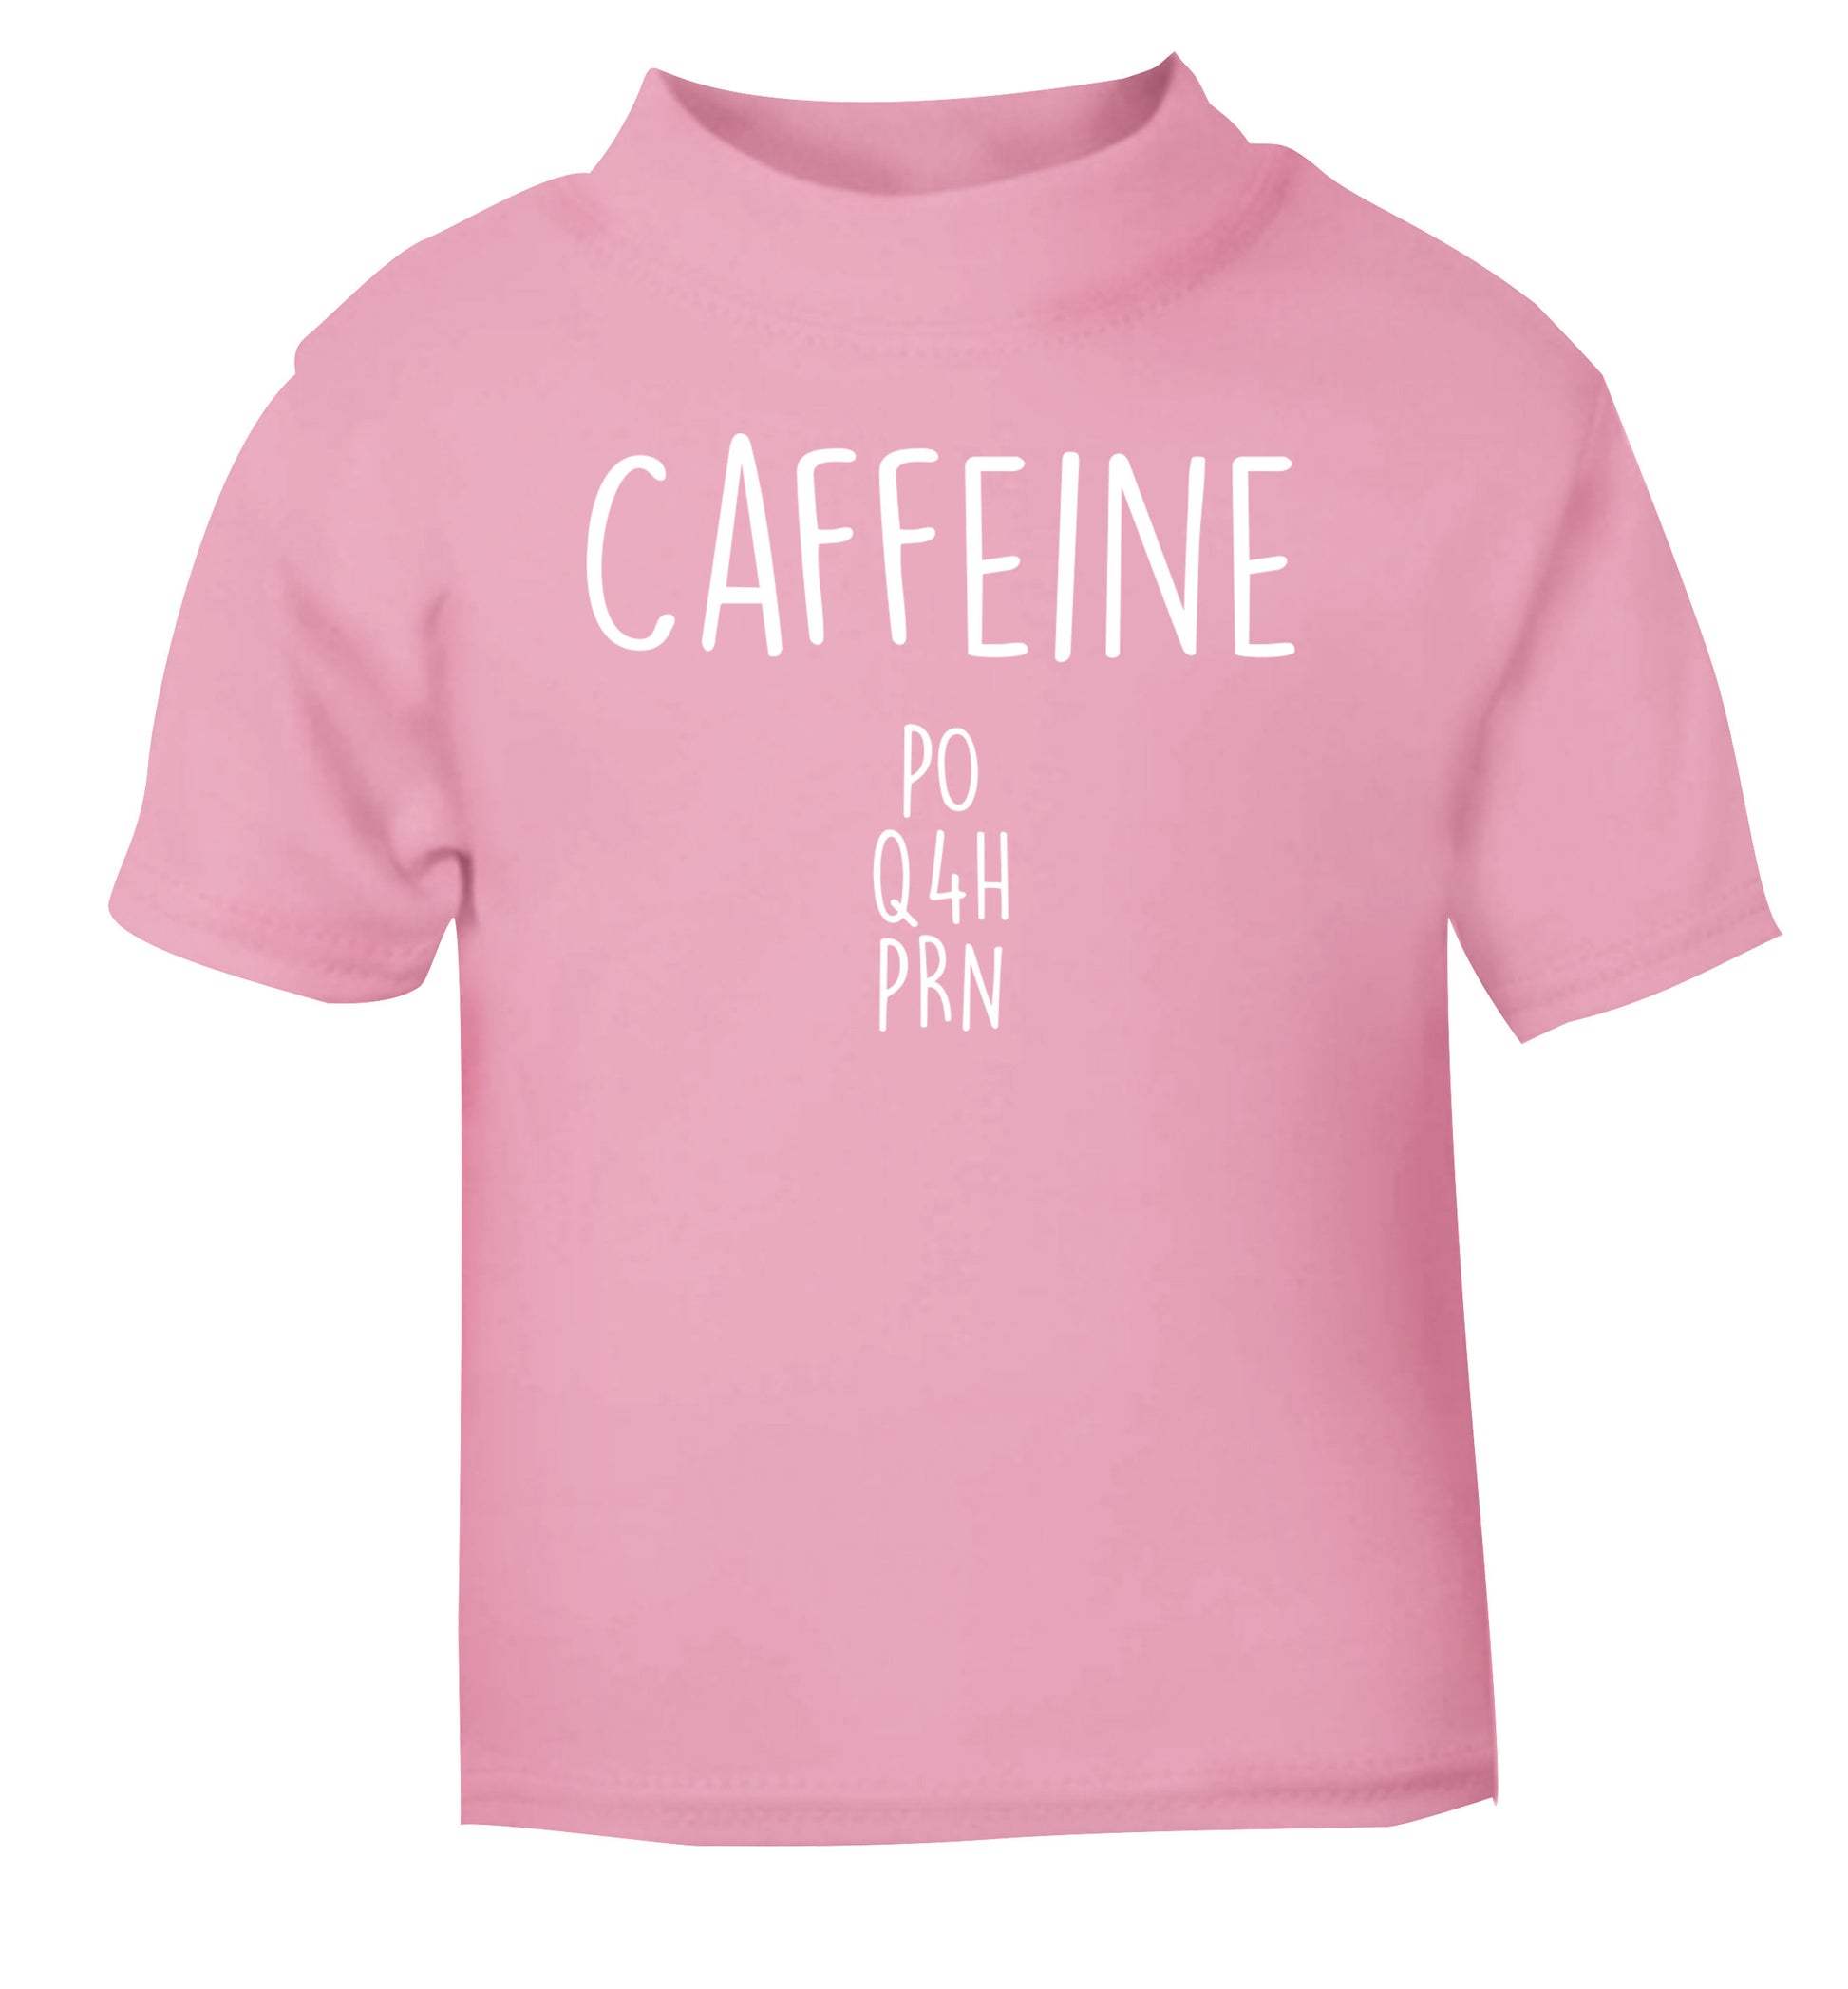 Caffeine PO Q4H PRN light pink Baby Toddler Tshirt 2 Years